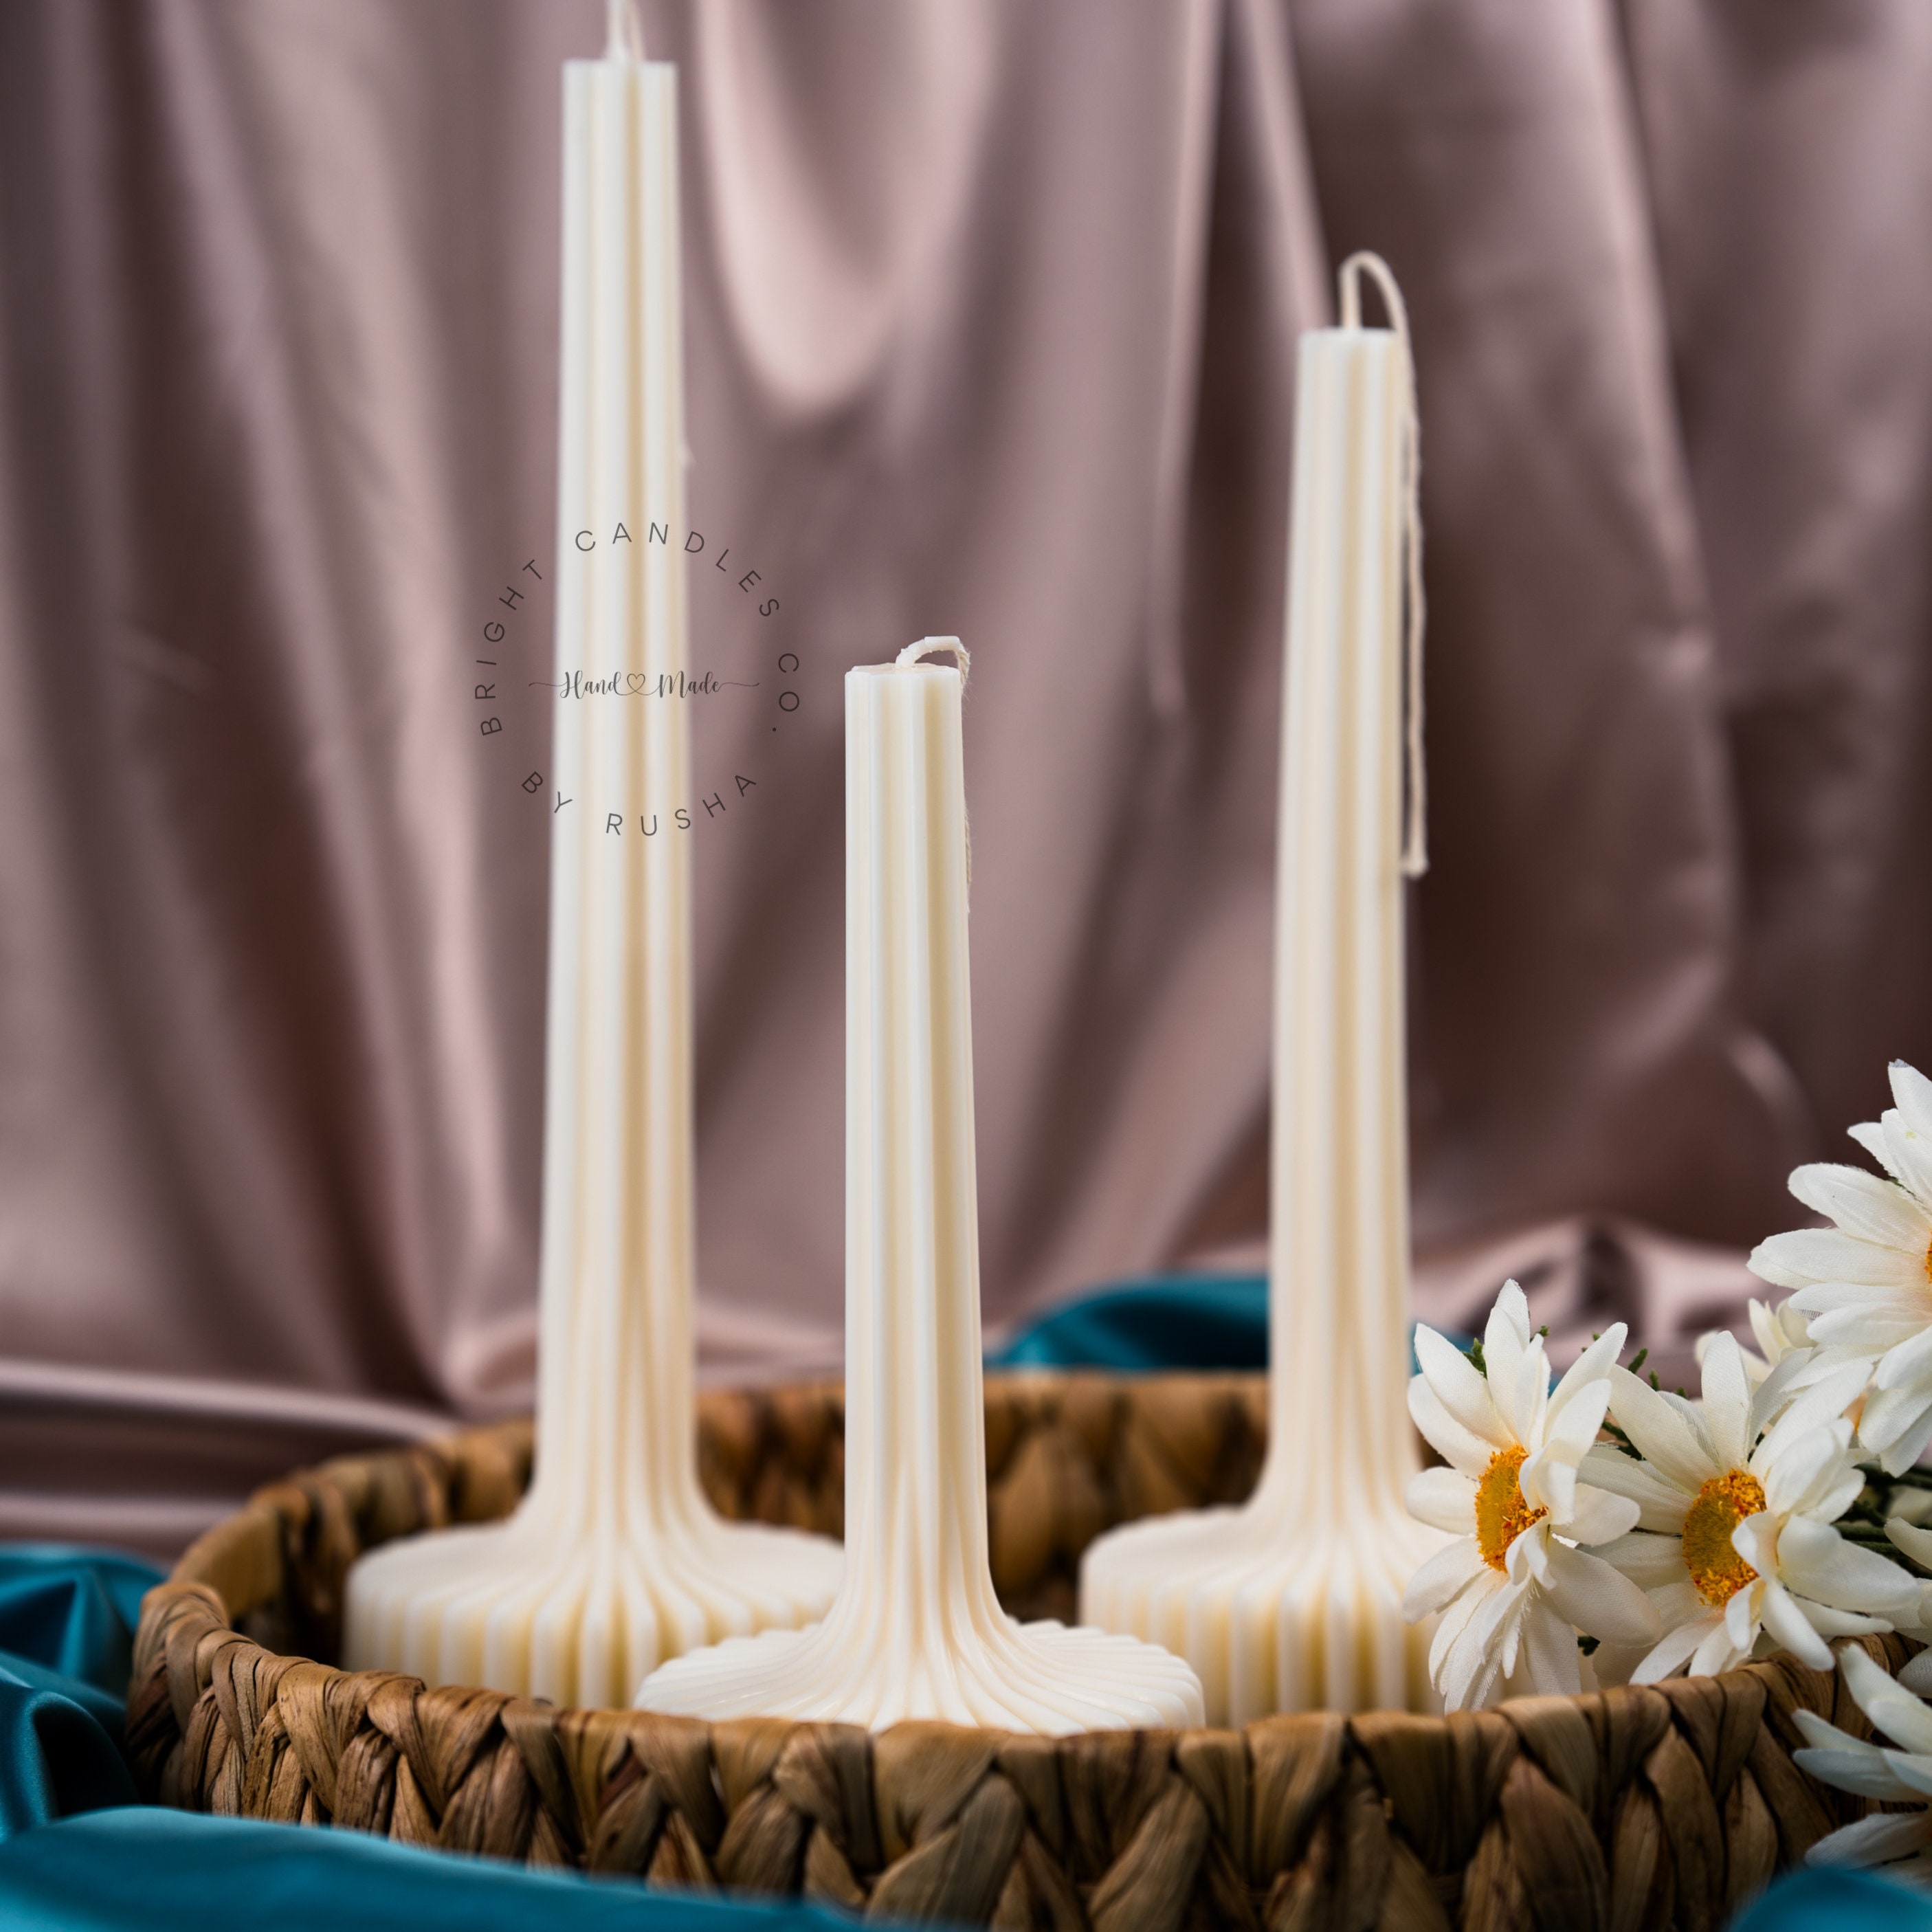 Portacandele in resina retrò candelieri moderni per candele alto Vintage  oro decorazione di nozze tavolo decorazioni per la casa rituale della chiesa